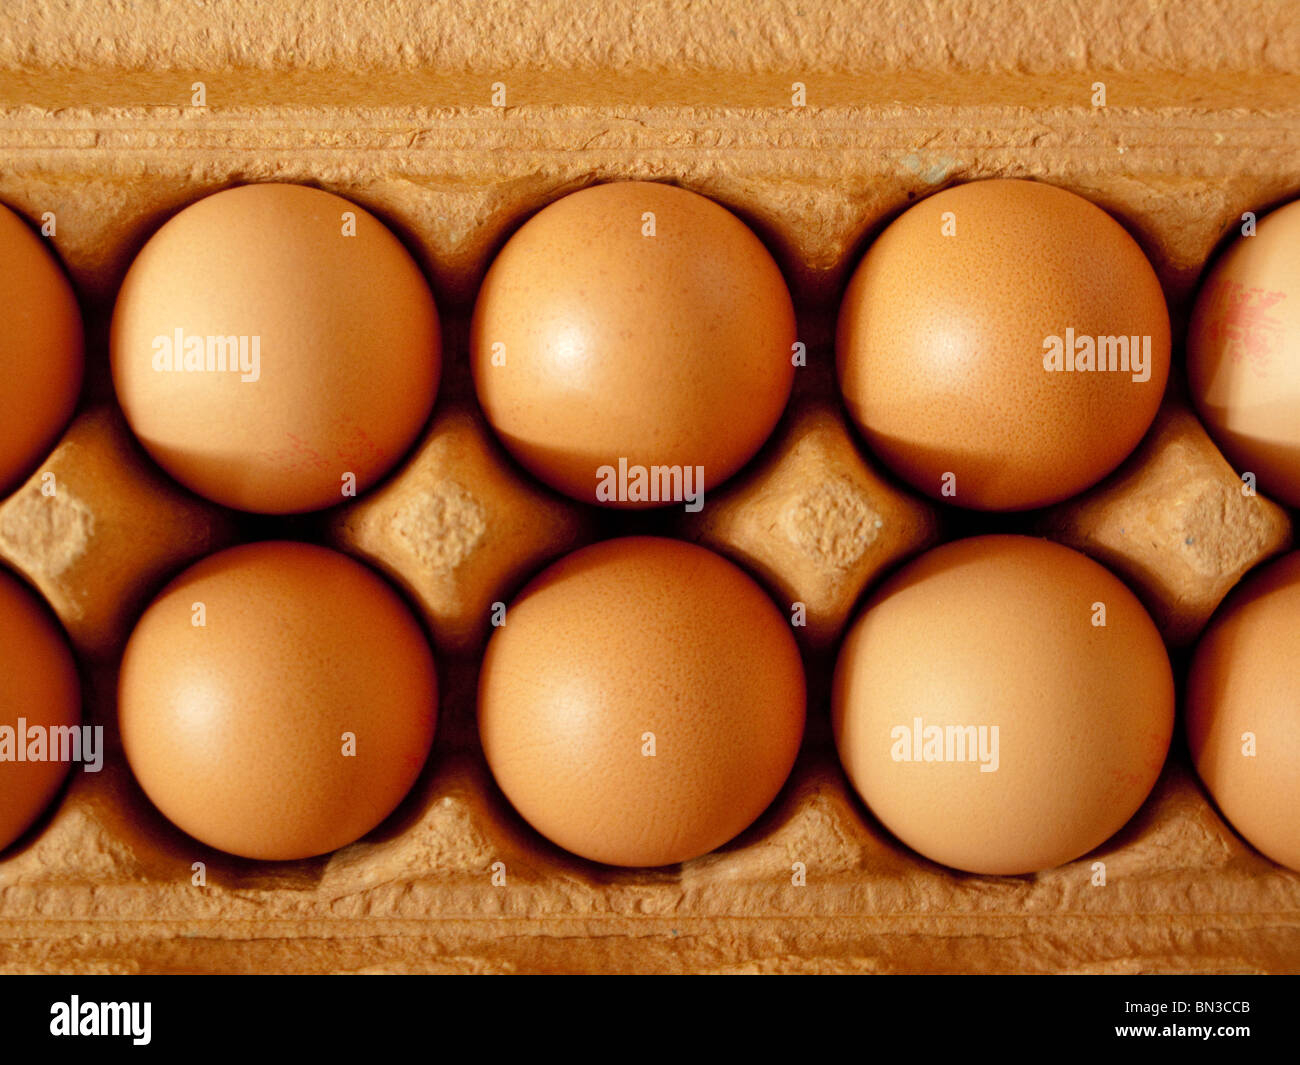 Eggs in a carton Stock Photo